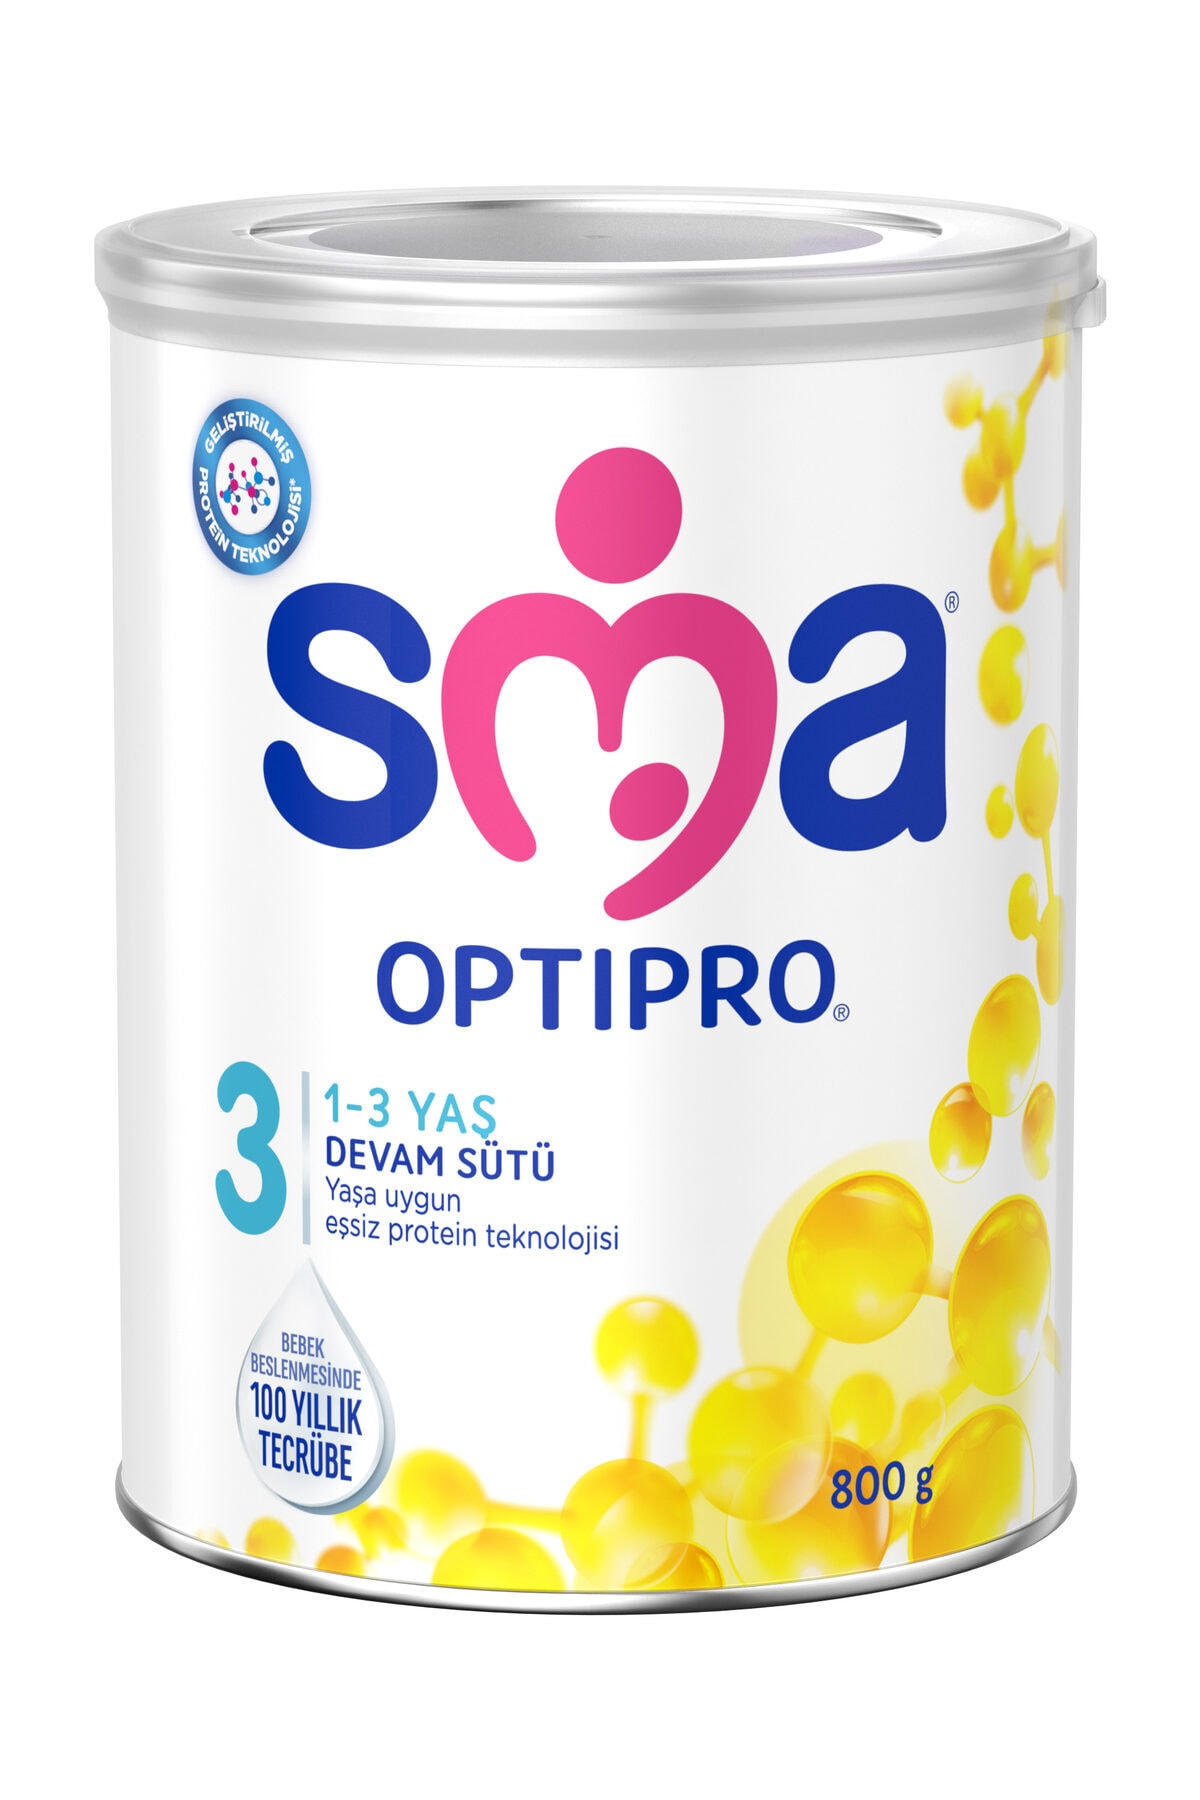 SMA Optipro 3 Devam Sütü 800 G 1-3 Yaş